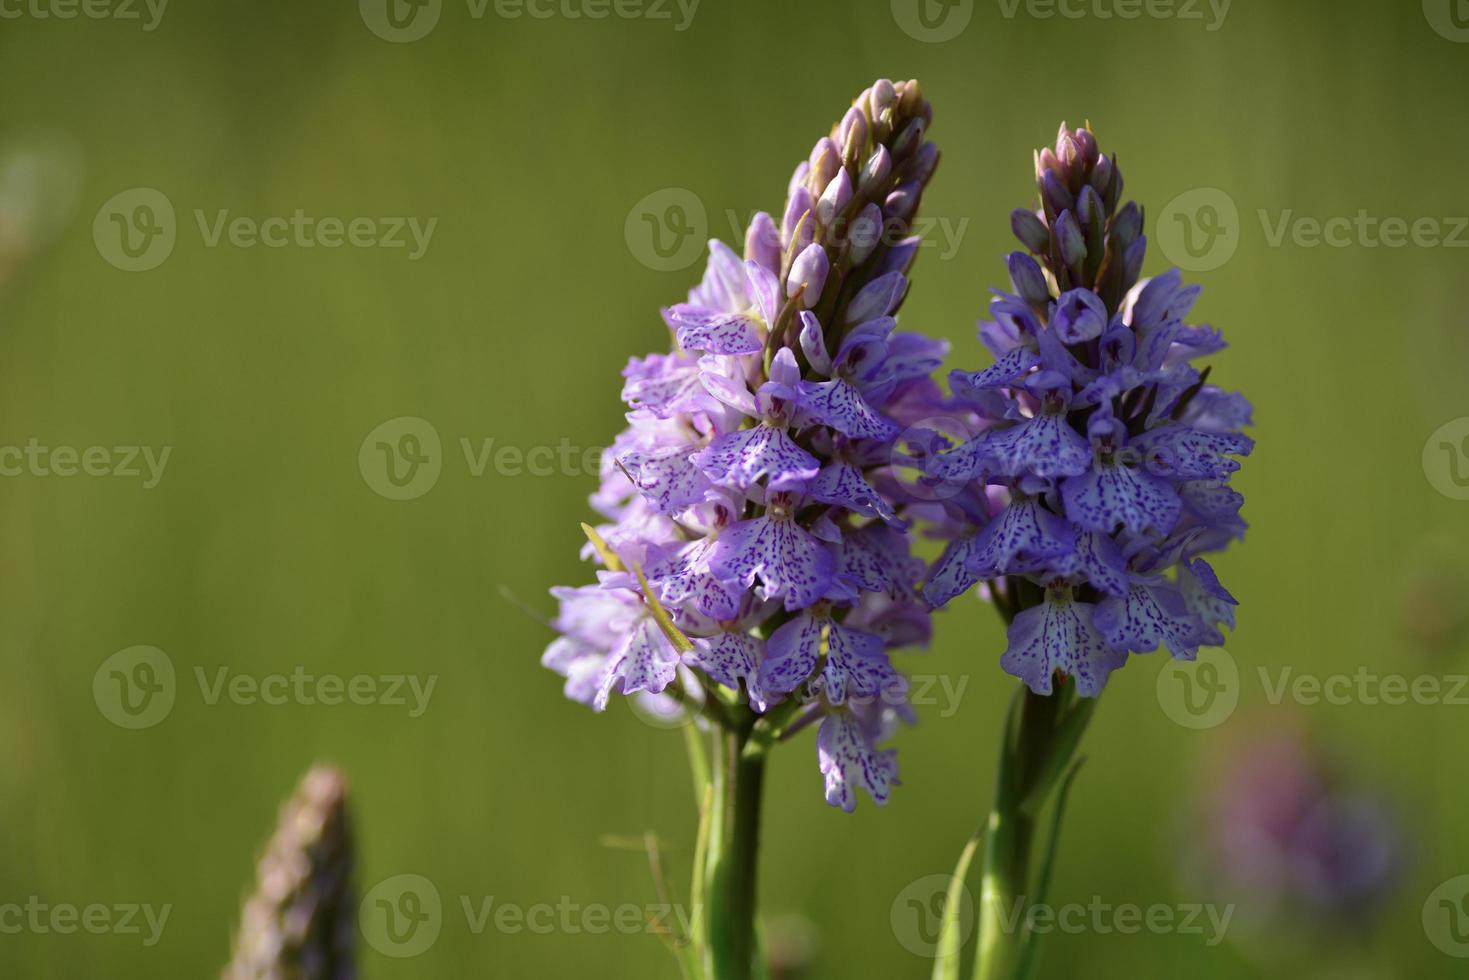 Spotted orchid jersey uk printemps marais fleurs sauvages photo